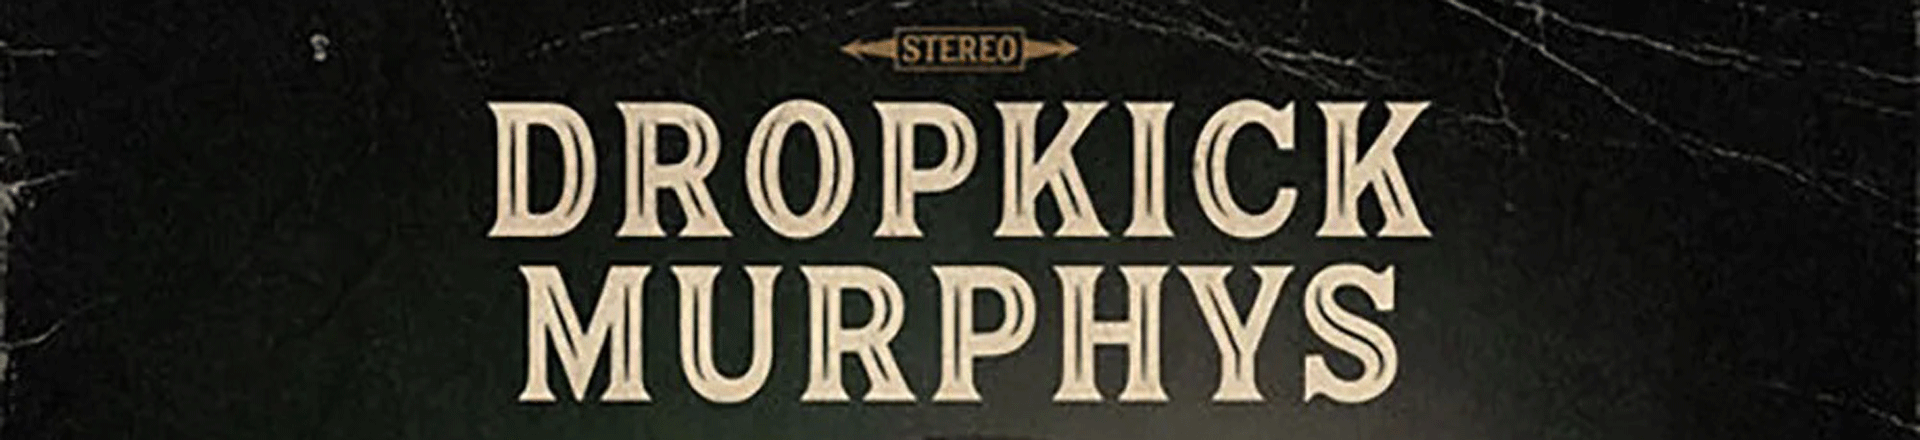 Dropkick Murphys wydali akustyczny album